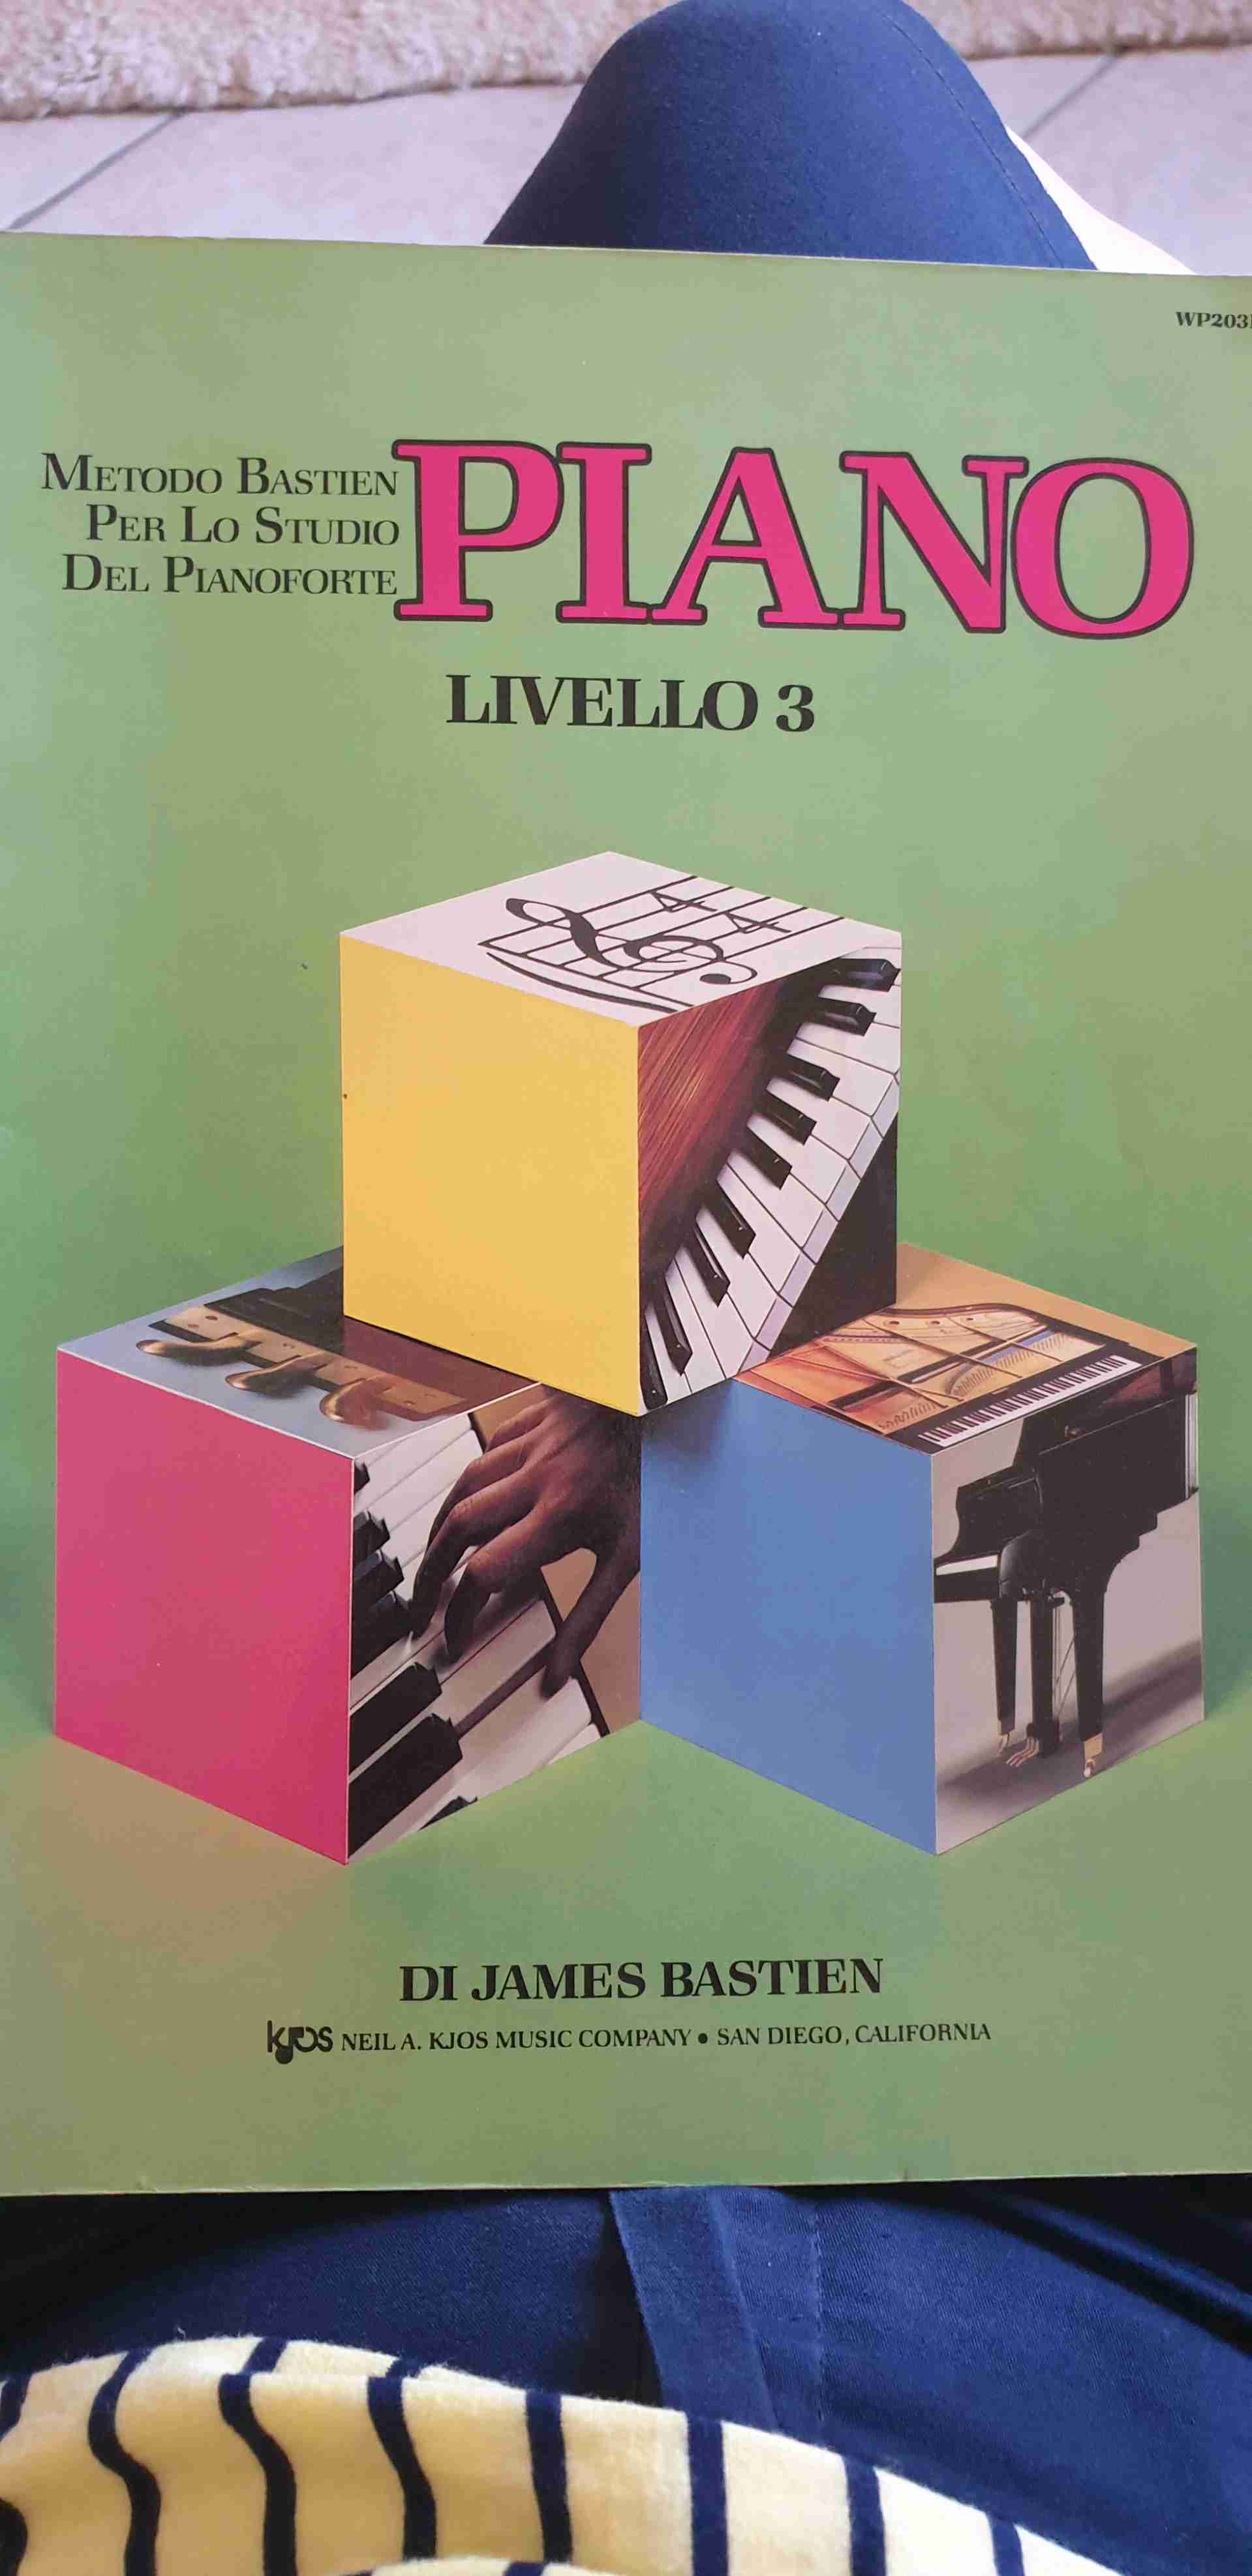 Metodo Bastien per lo studio del pianoforte -piano- livello 3